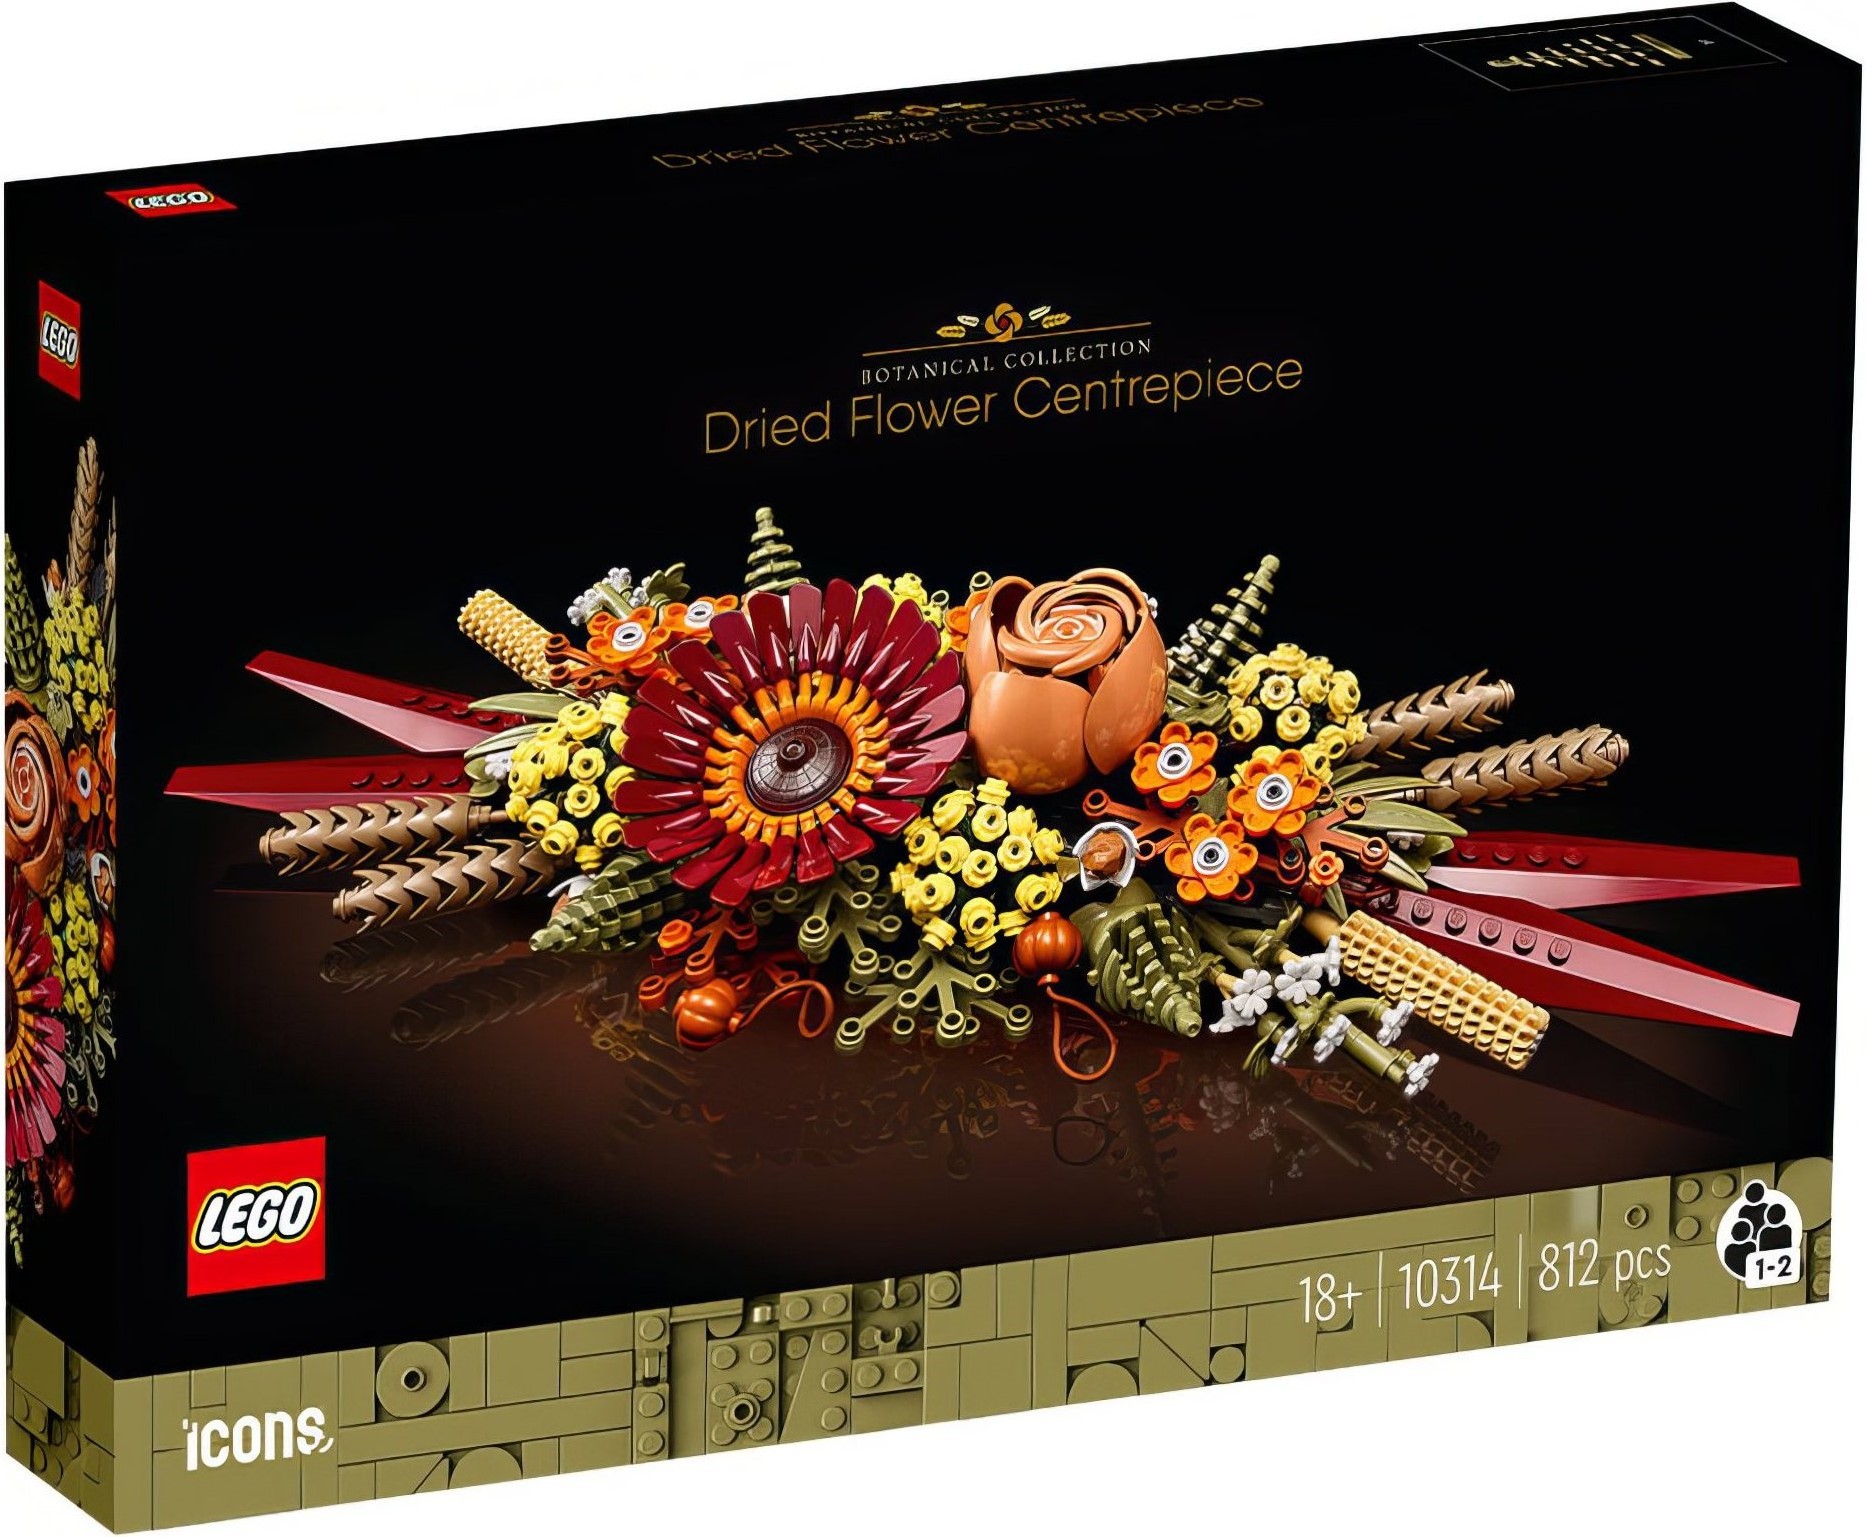 LEGO Icons Botanical Collection February 2023 Sets Revealed - The